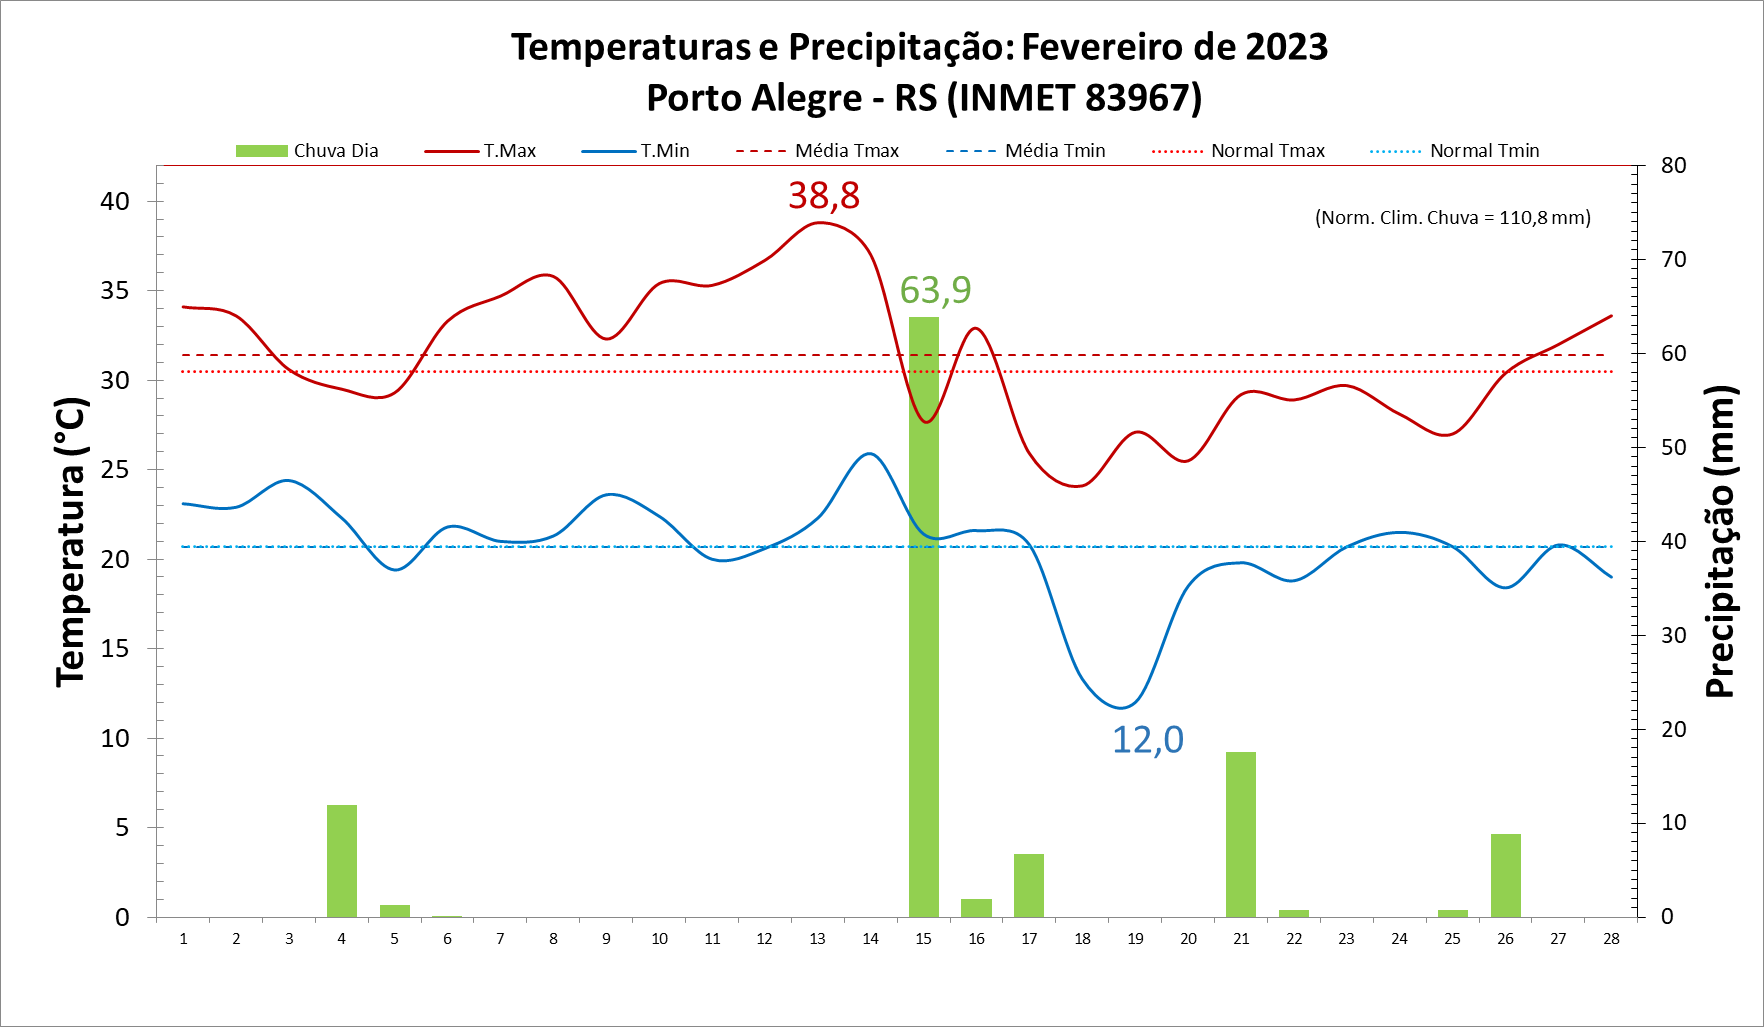 Verão 2022/2023: Porto Alegre (RS) teve chuvas abaixo da média neste verão